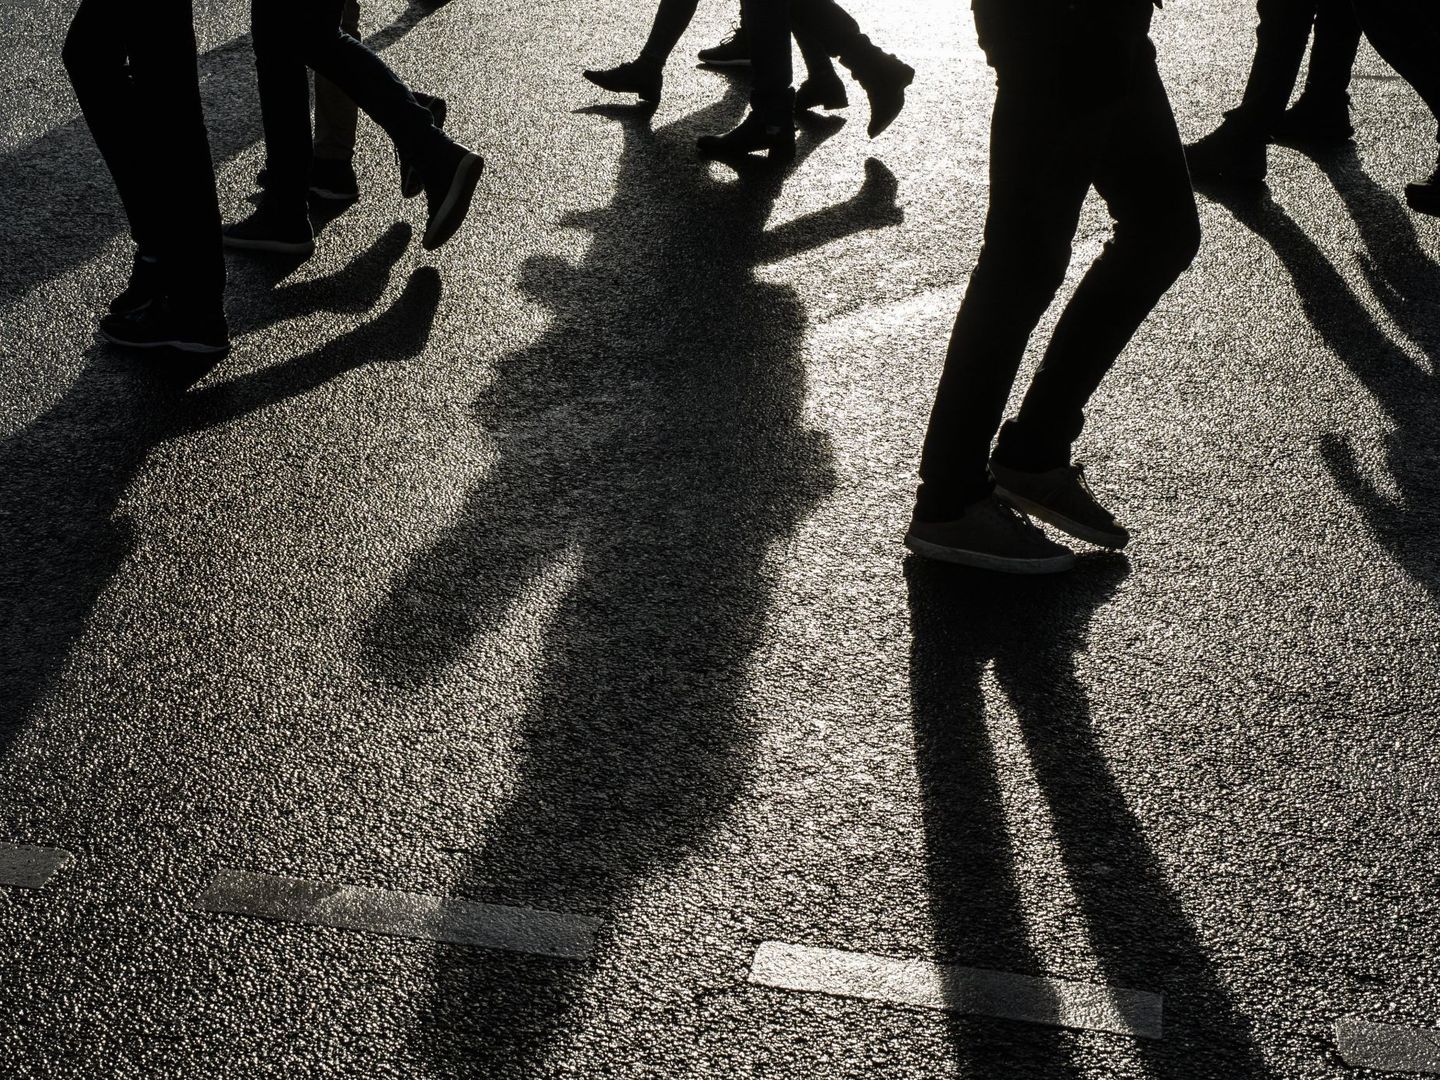 EPA4508. BERLIN (ALEMANIA), 24 01 2018.- La sombra de varios transeúntes se proyecta sobre el asfalto en un día soleado en Berlín, Alemania, hoy 24 de enero de 2018. EFE  Clemens Bilan